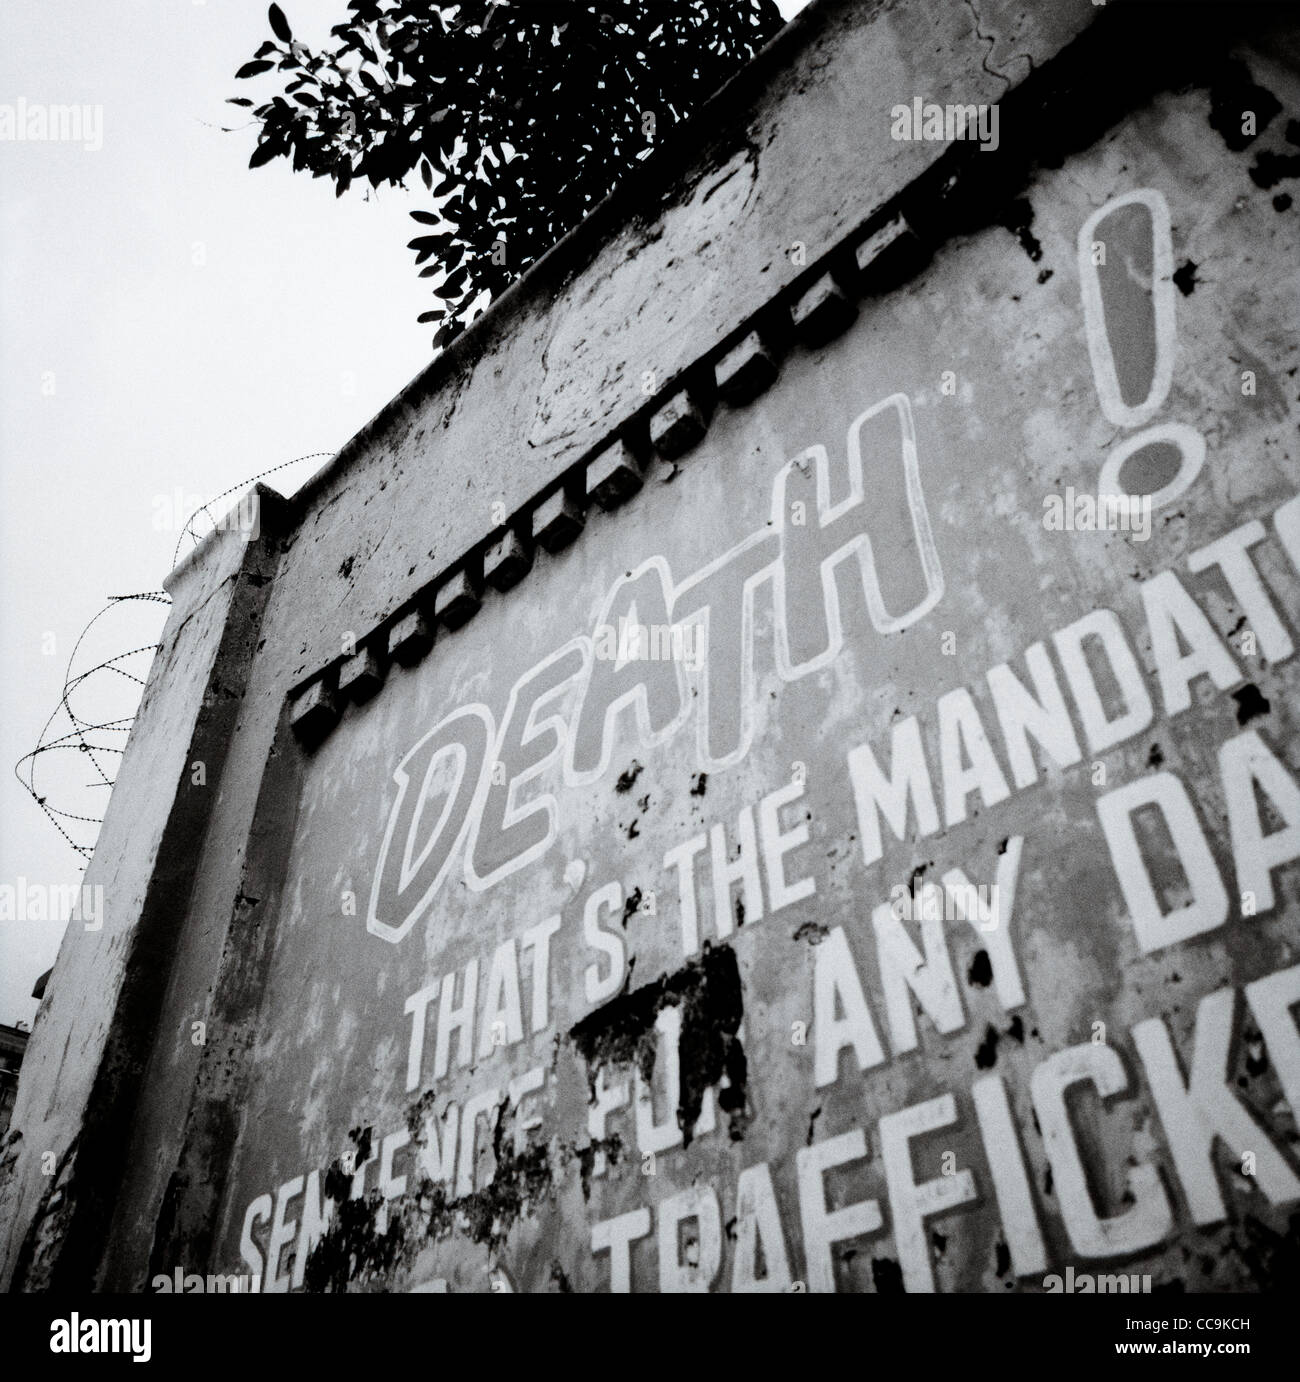 Un avertissement de la peine de mort pour trafic de drogue sur le mur de la prison de Pudu en Kuala Lumpur en Malaisie en Extrême-Orient Asie du sud-est. L'Art des stupéfiants Banque D'Images